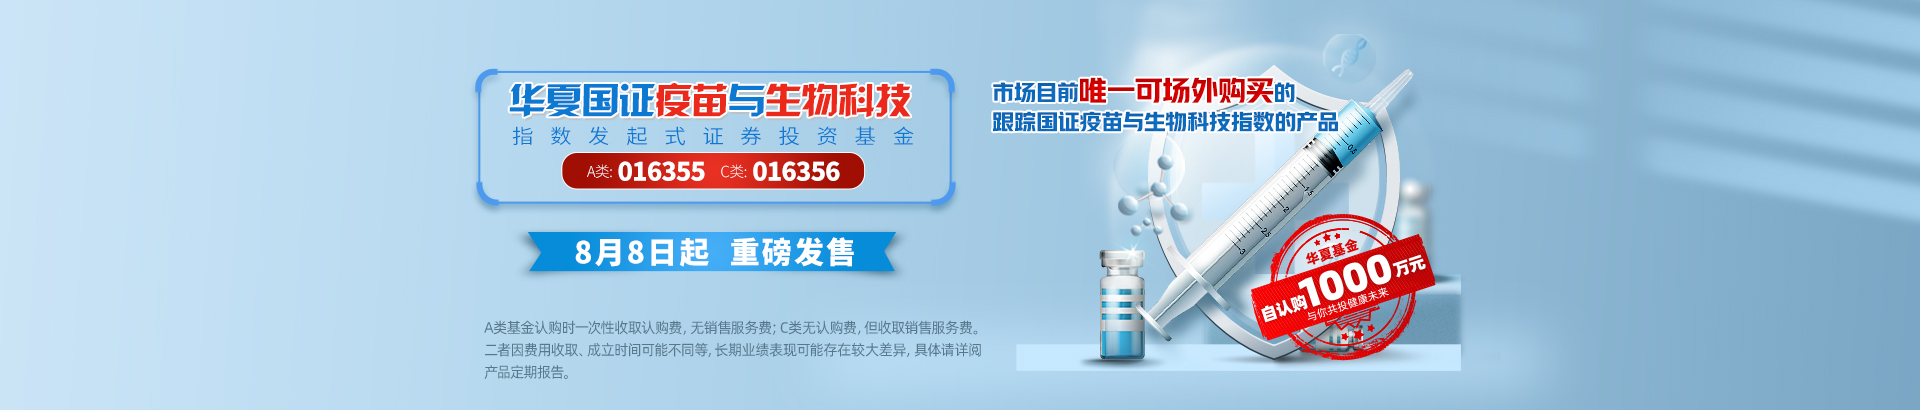 016355华夏国证疫苗与生物科技指数发起式